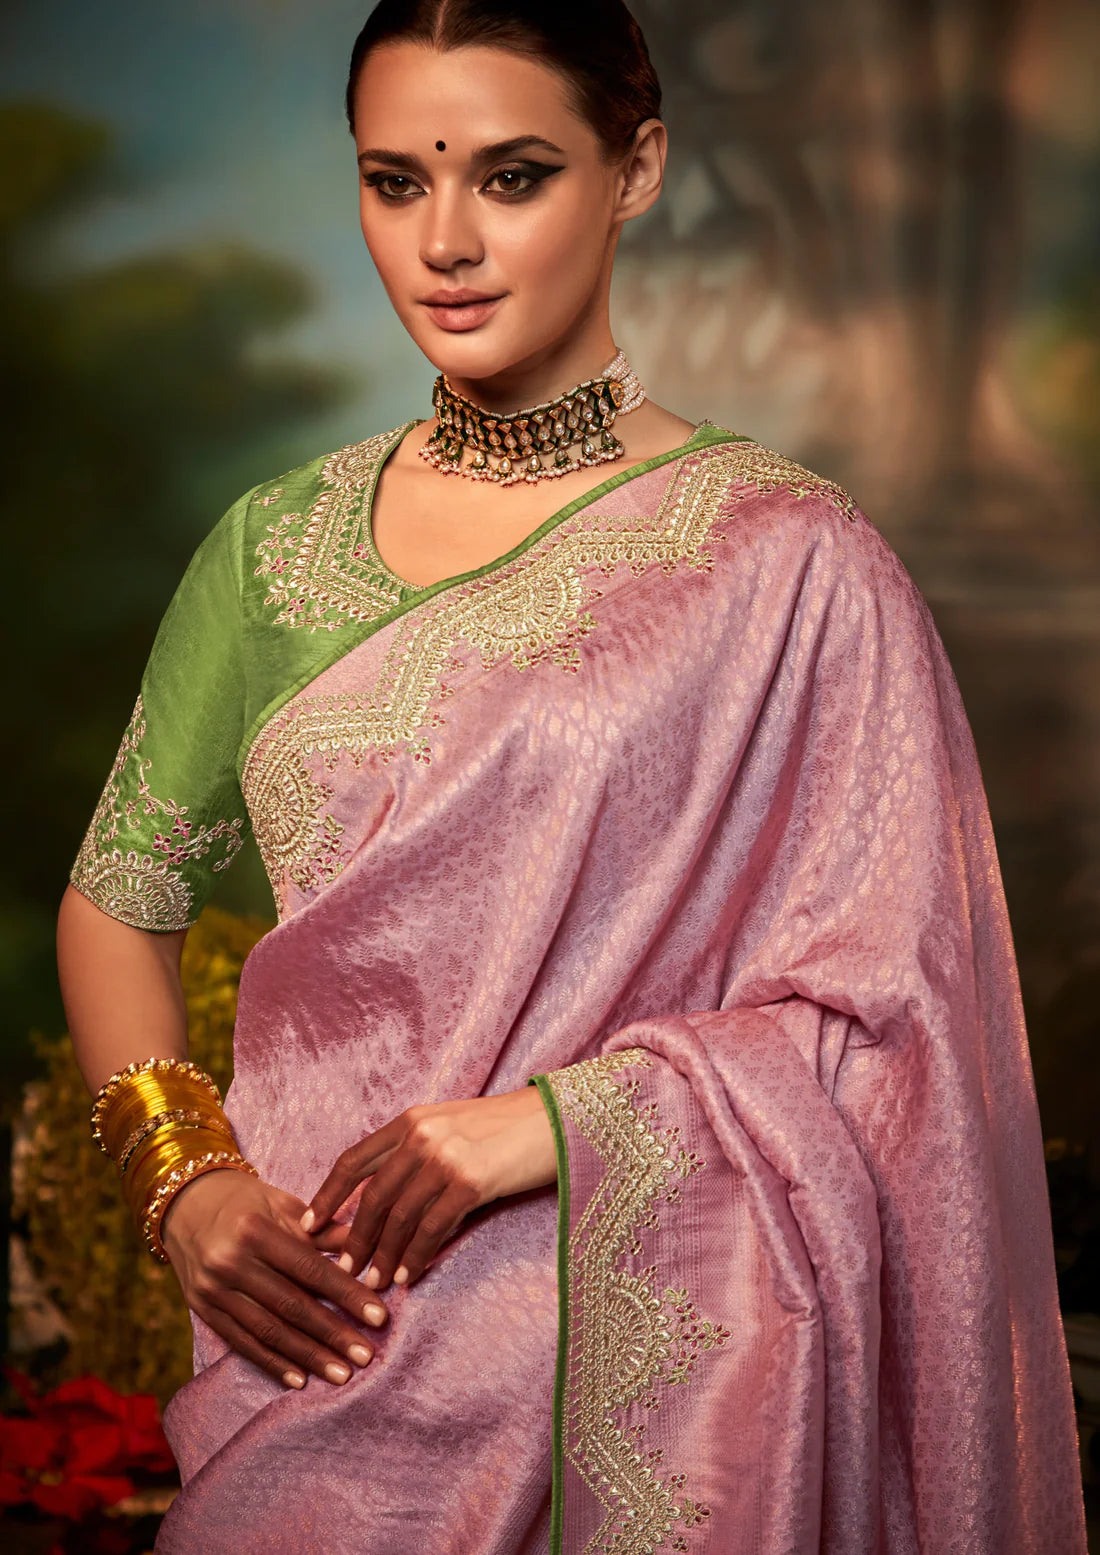 Banarasi katan silk hand embroidered work pink saree contrast blouse online buy india usa uk.